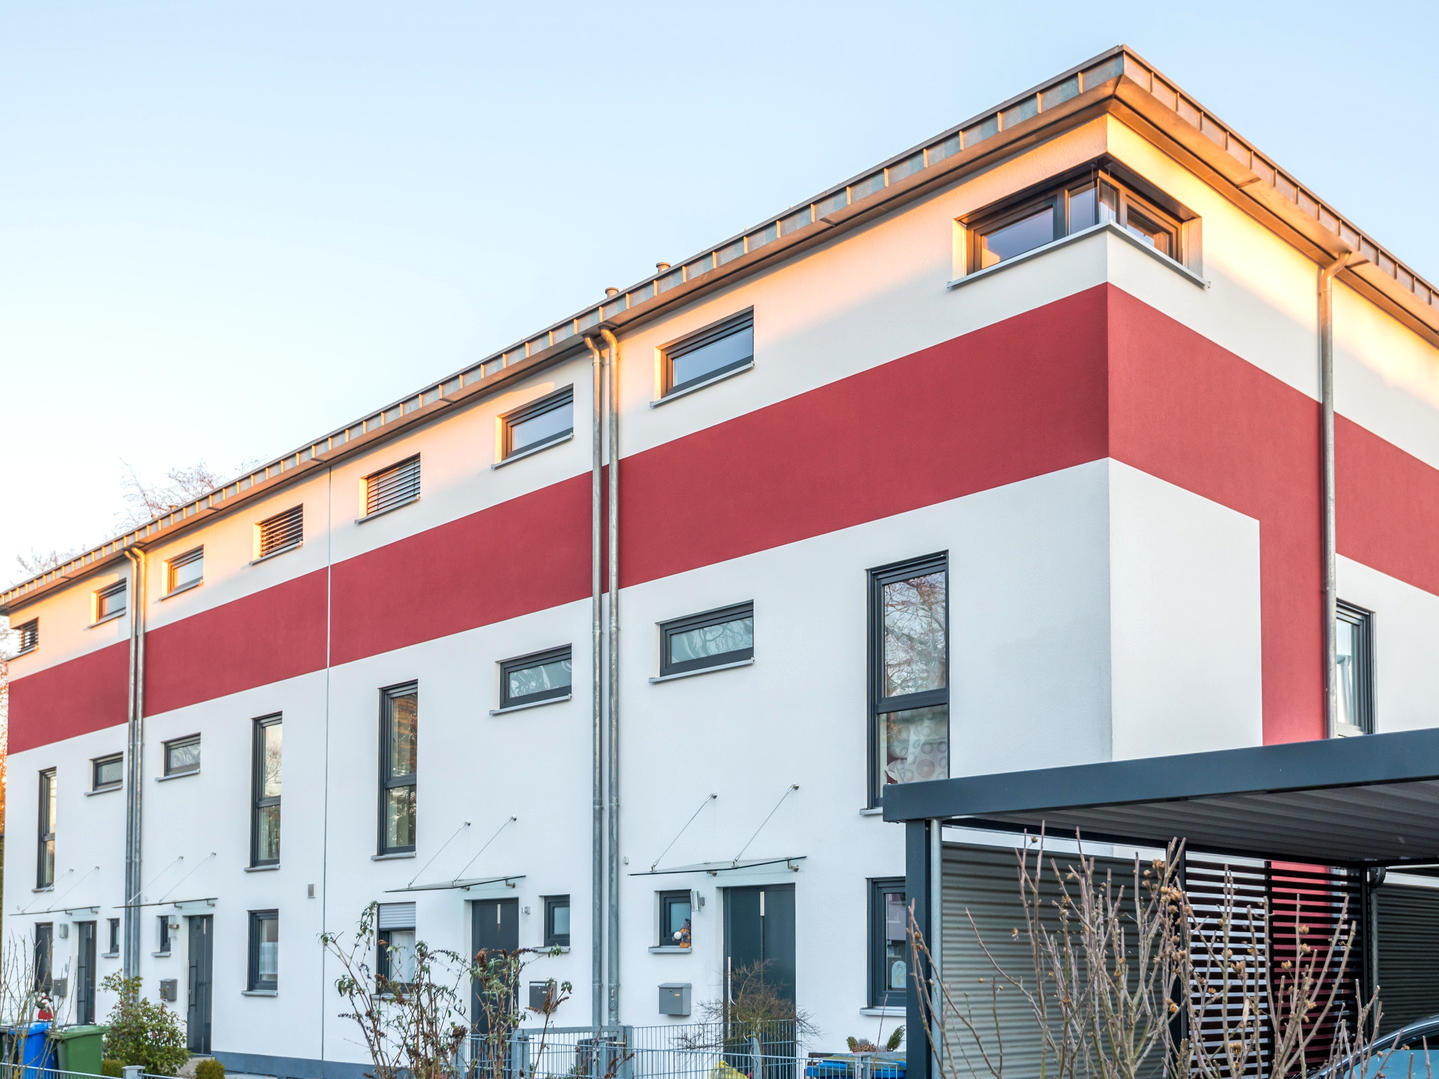 Mehrfamilienhaus mit 6 Wohneinheiten - schlüsselfertig bauen im Raum Hamburg, Kiel, Neumünster, Norderstedt